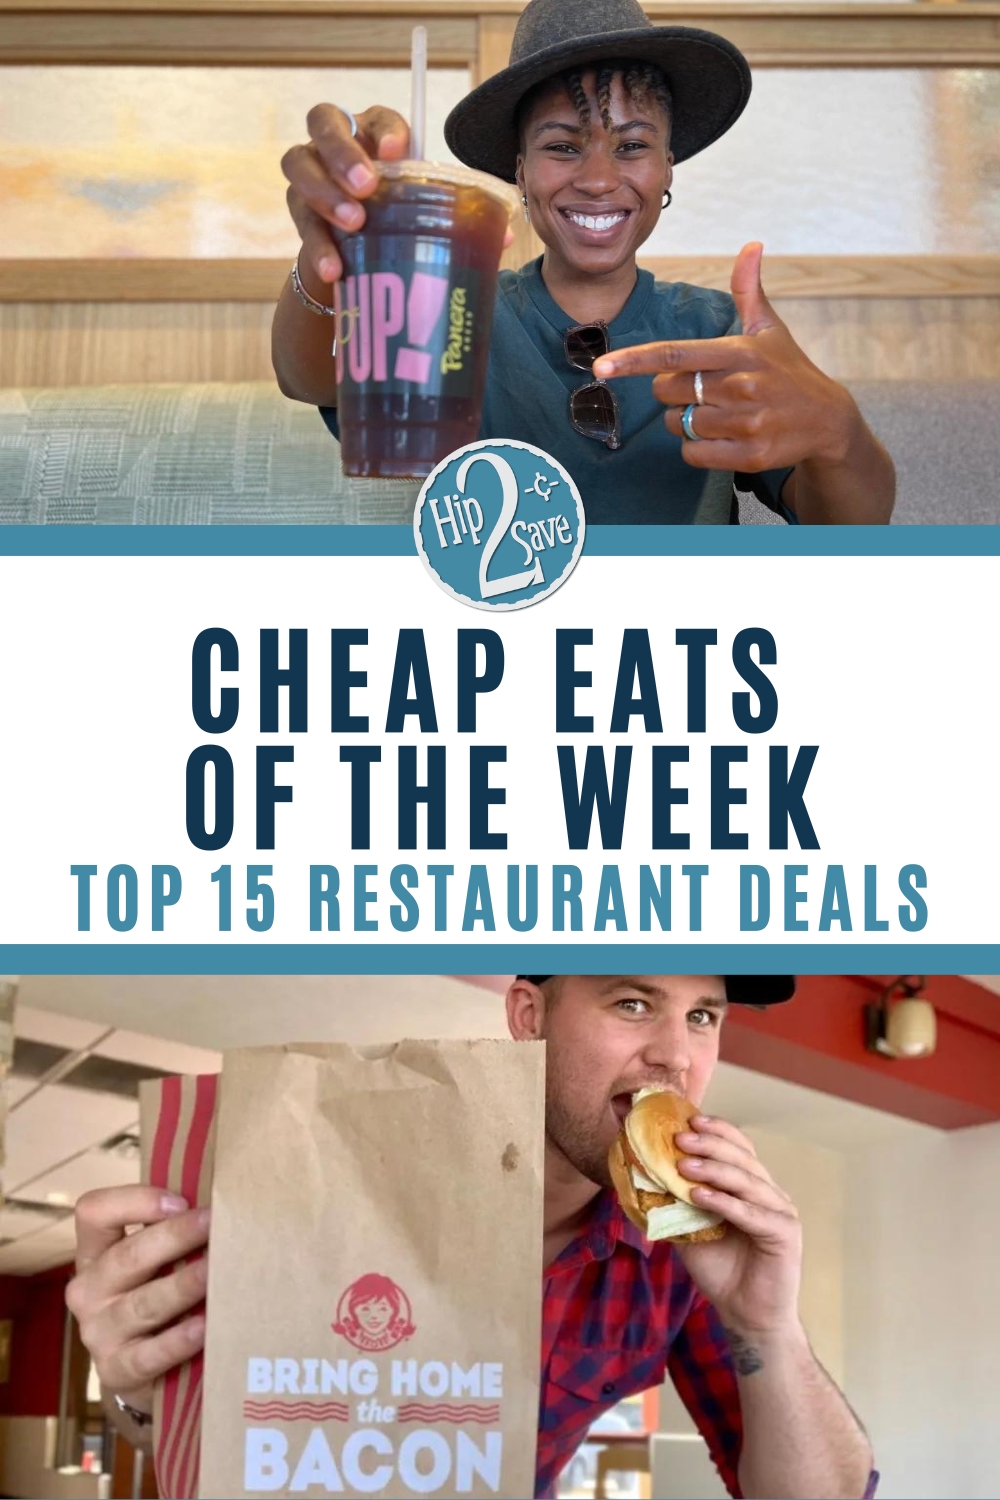 Affordable restaurant deals